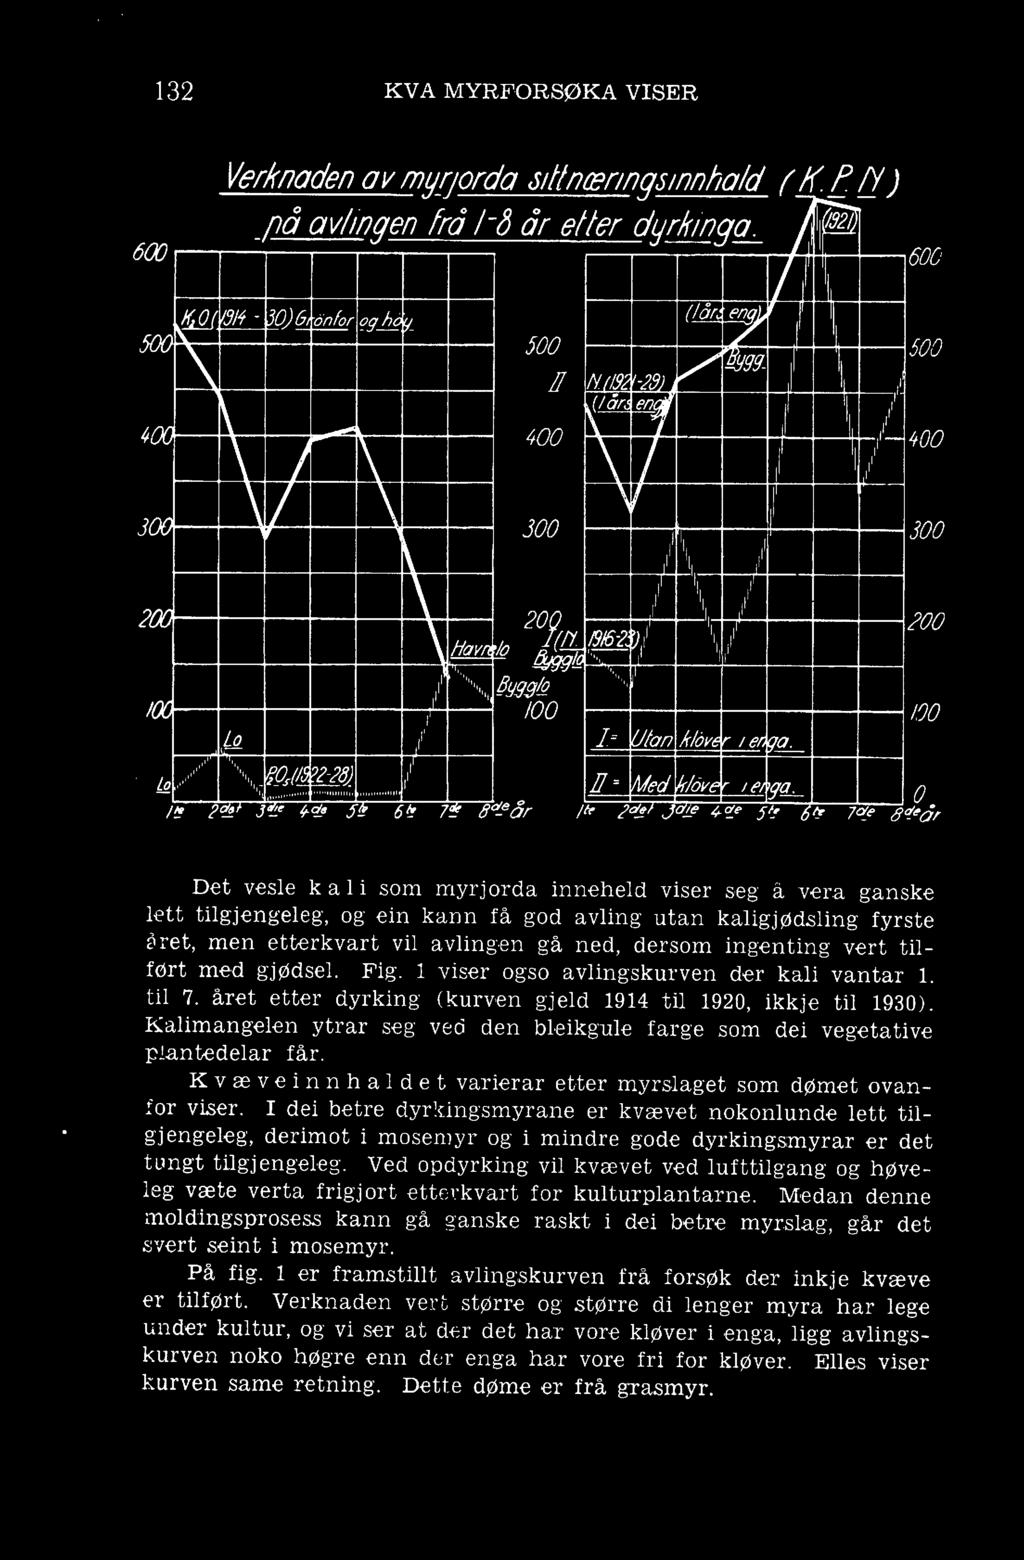 vert tilført med gjødsel. Fig. 1 viser ogso avlingskurven der kali vantar 1. til 7. året etter dyrking (kurven gjeld 1914 til 1920, ikkje til 1930).